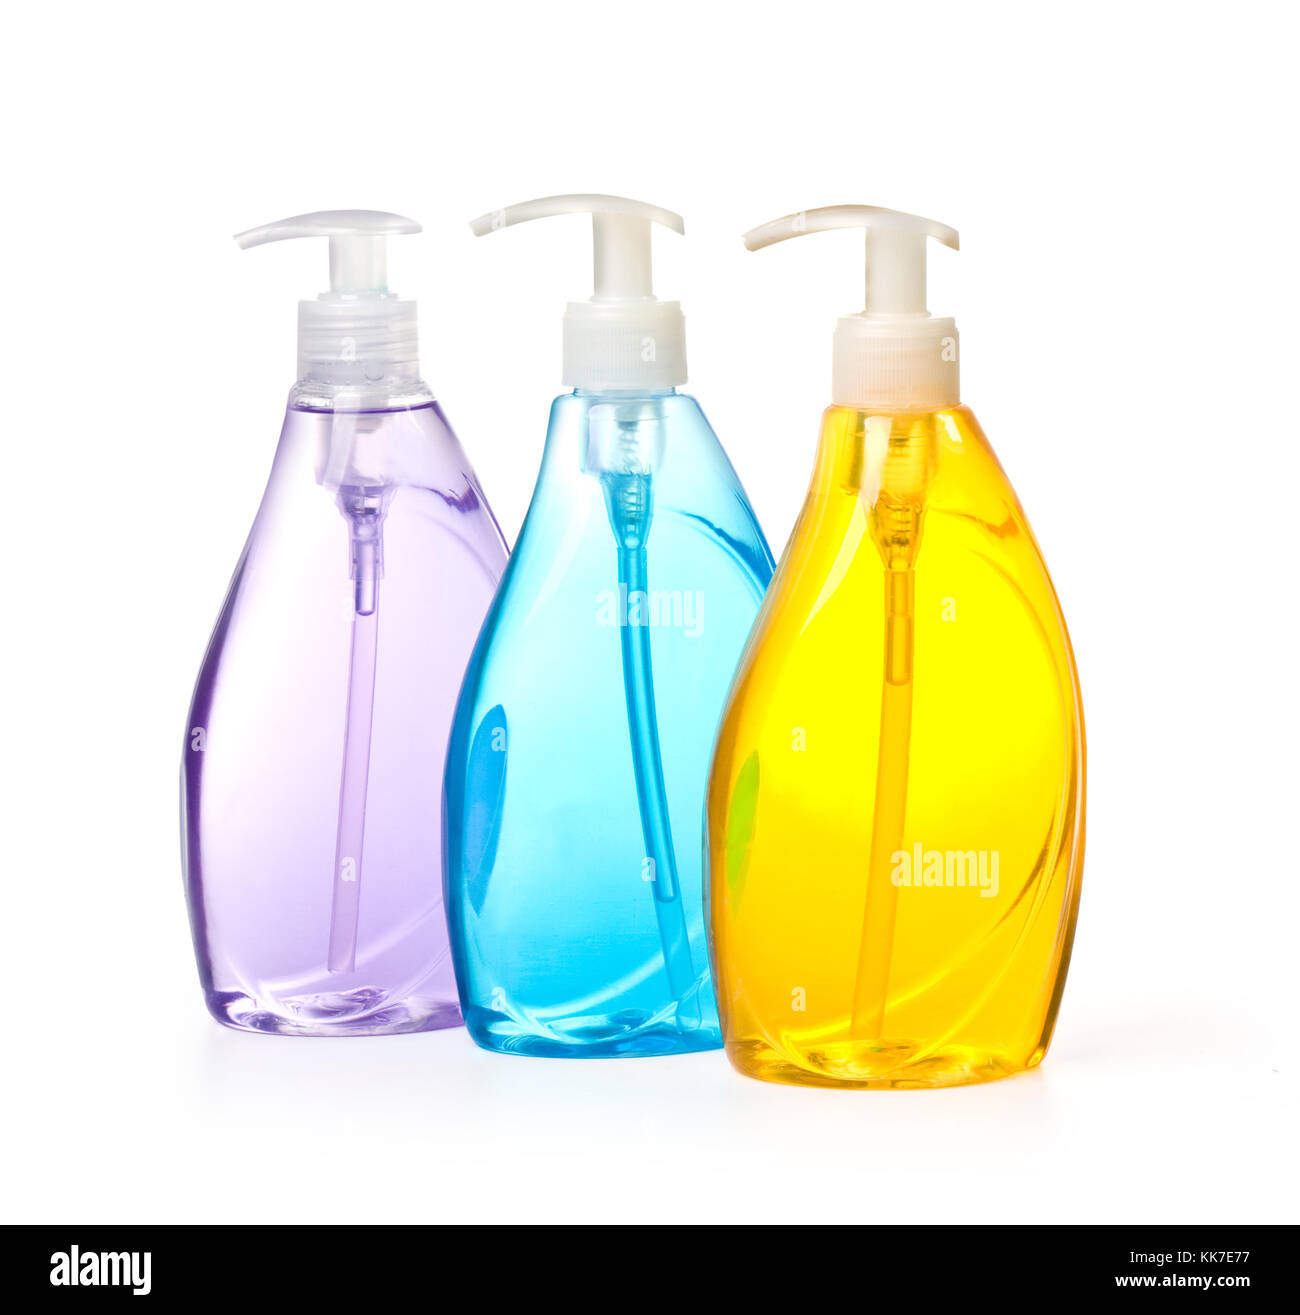 Les bouteilles en plastique avec du savon liquide sur un fond blanc avec clipping path Banque D'Images